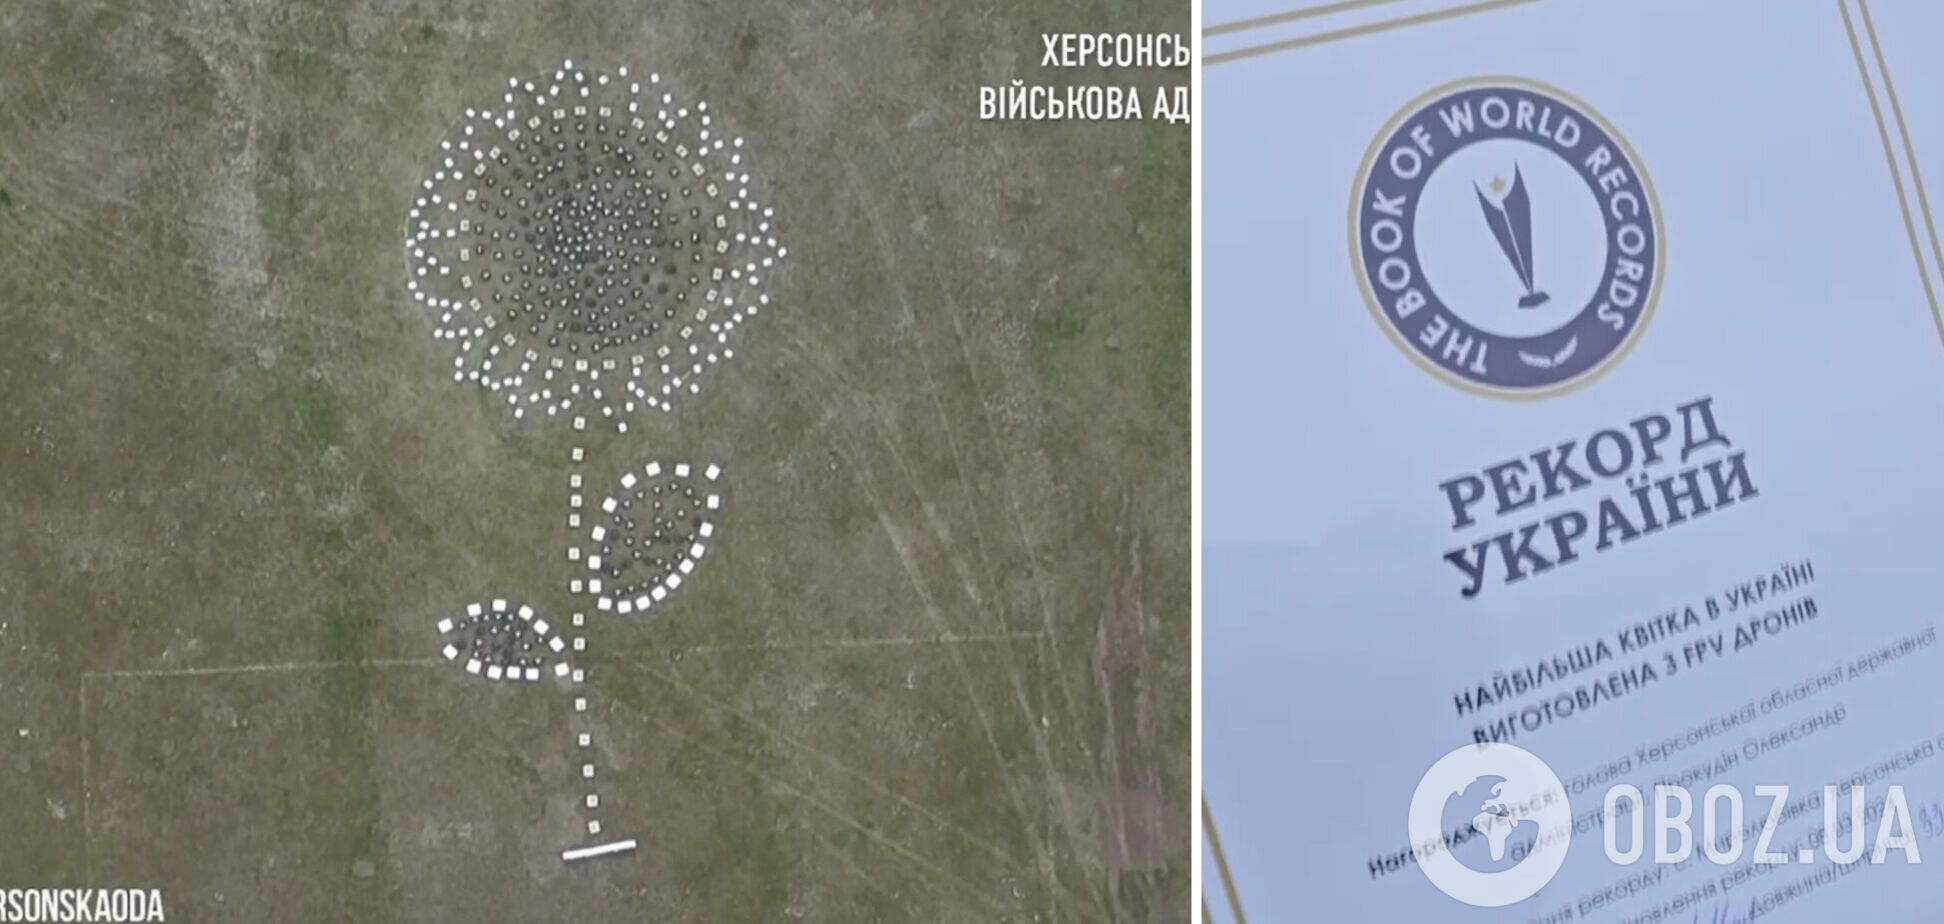 Особый цветок: херсонский 'подсолнух из дронов' вошел в Книгу рекордов Украины. Видео